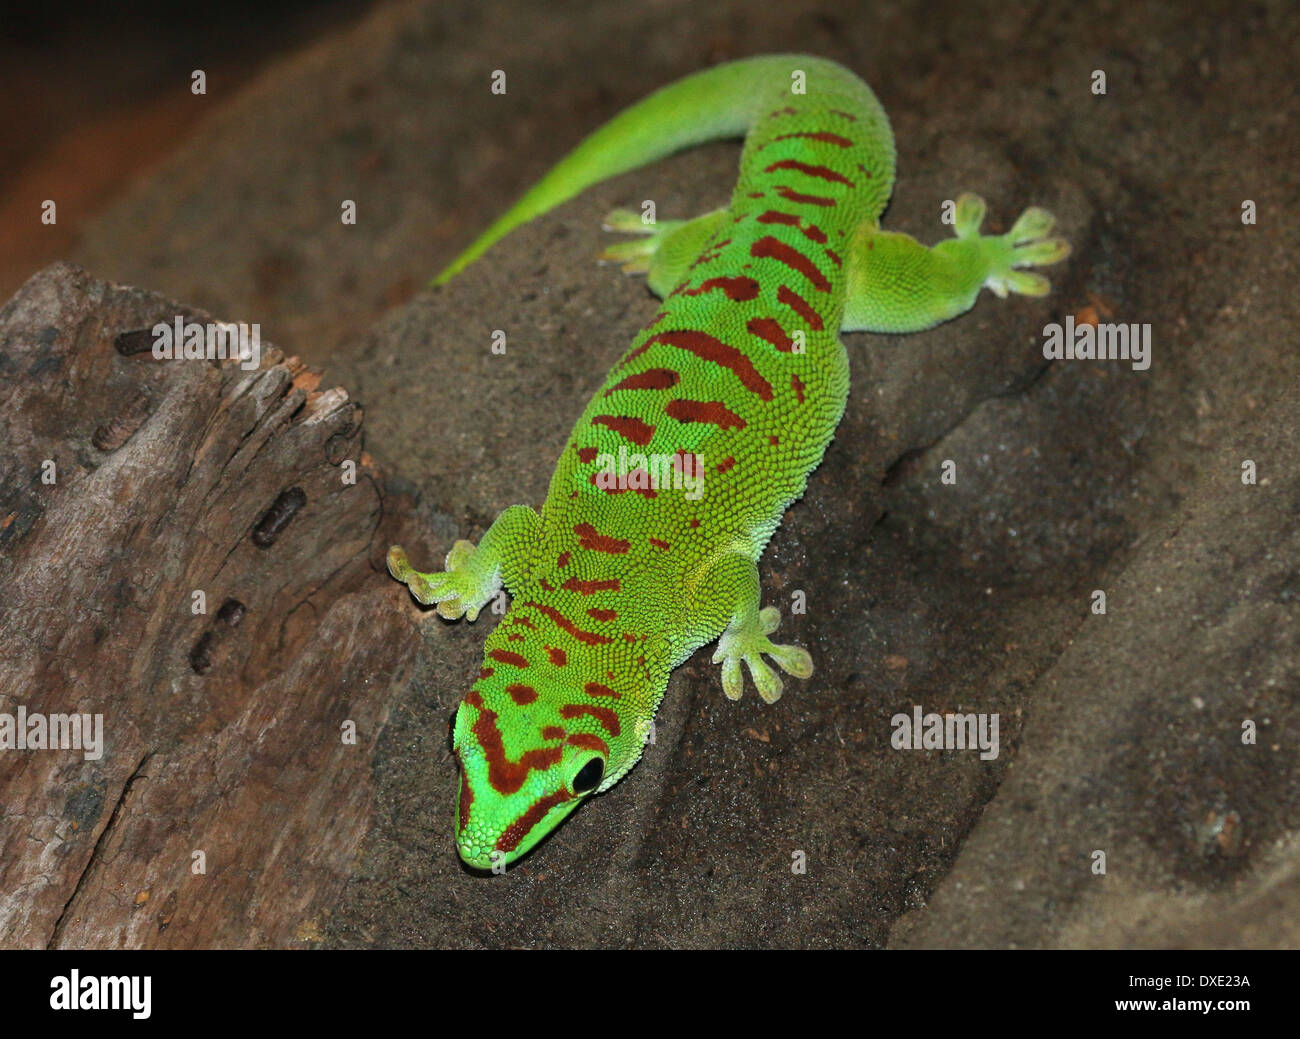 Green Day Gecko de Madagascar (Phelsuma madagascariensis) Foto de stock